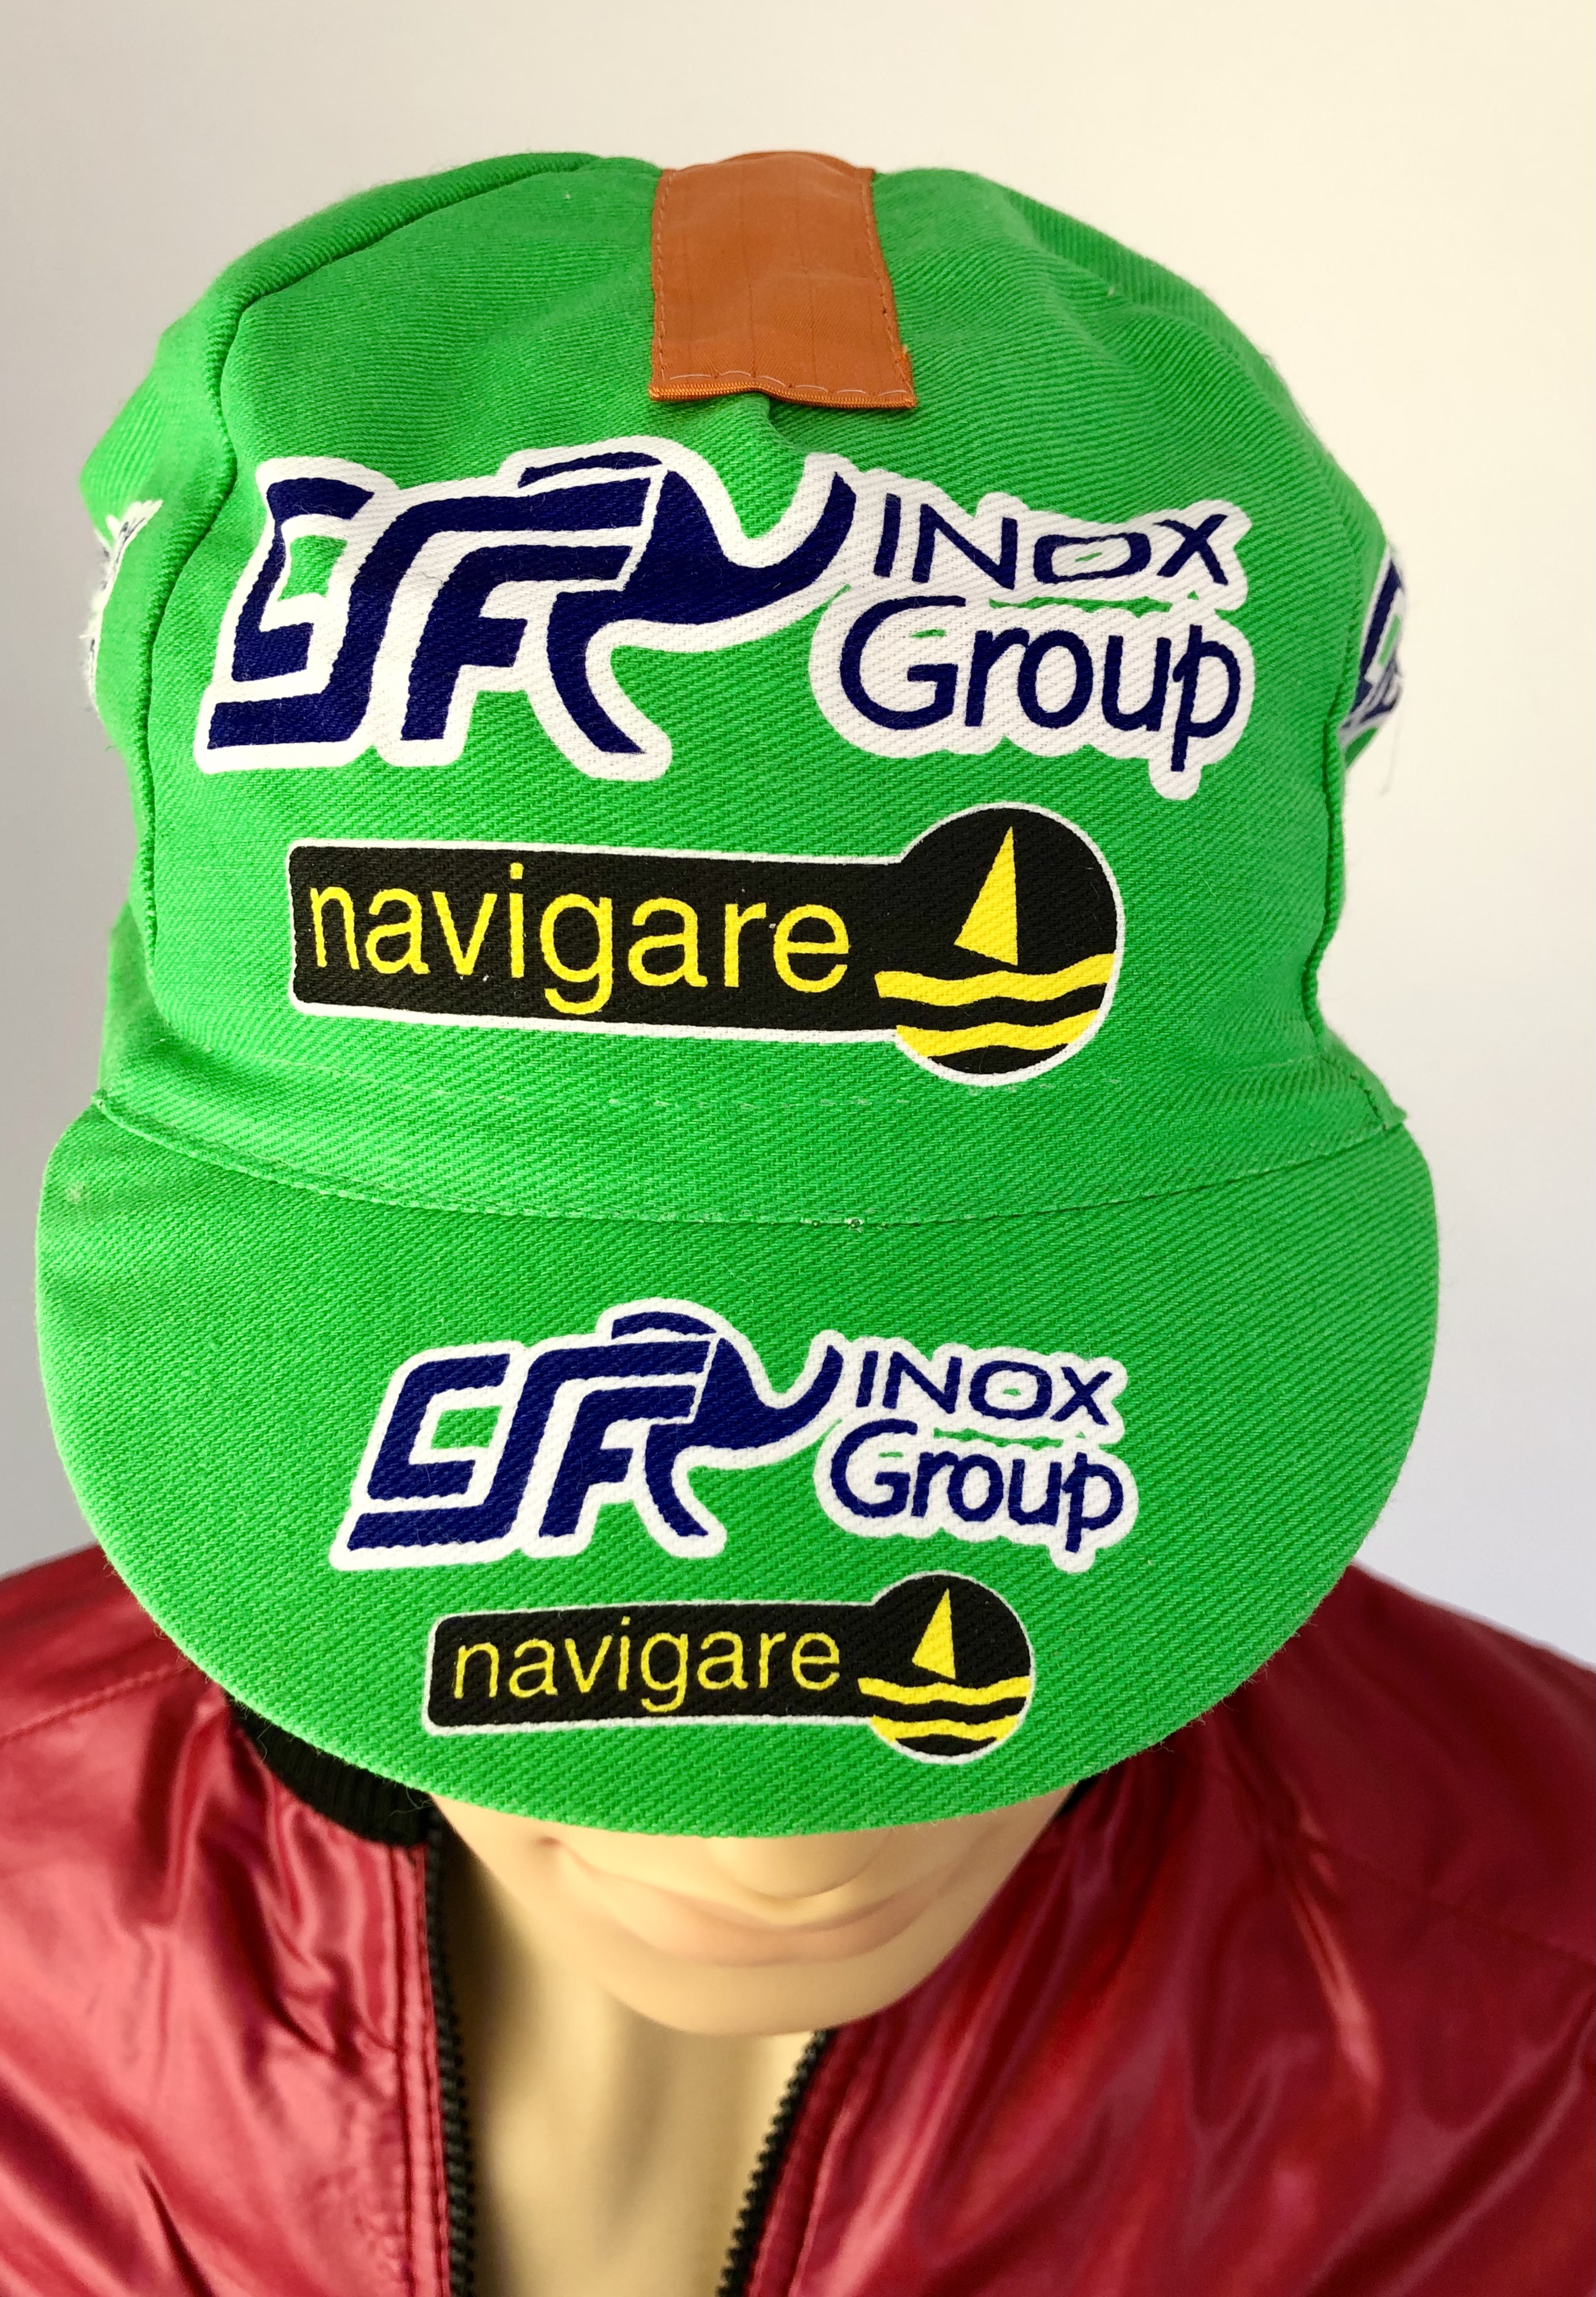 La Casquette Team  CSF Inox Group Navigare